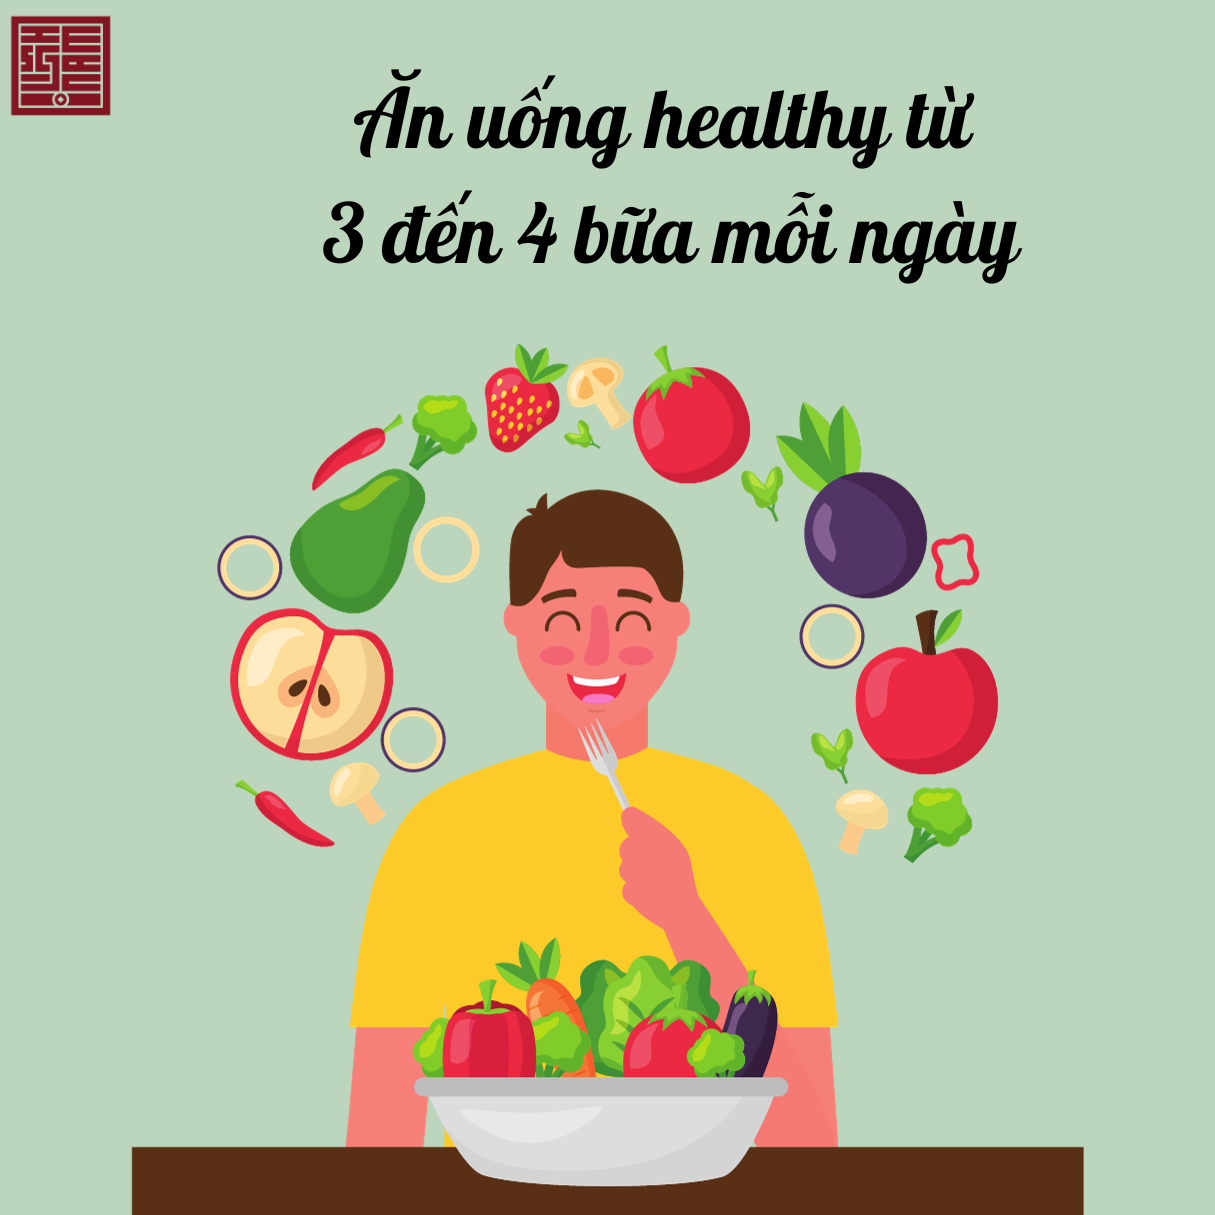 Ăn uống healthy từ 3 đến 4 bữa mỗi ngày